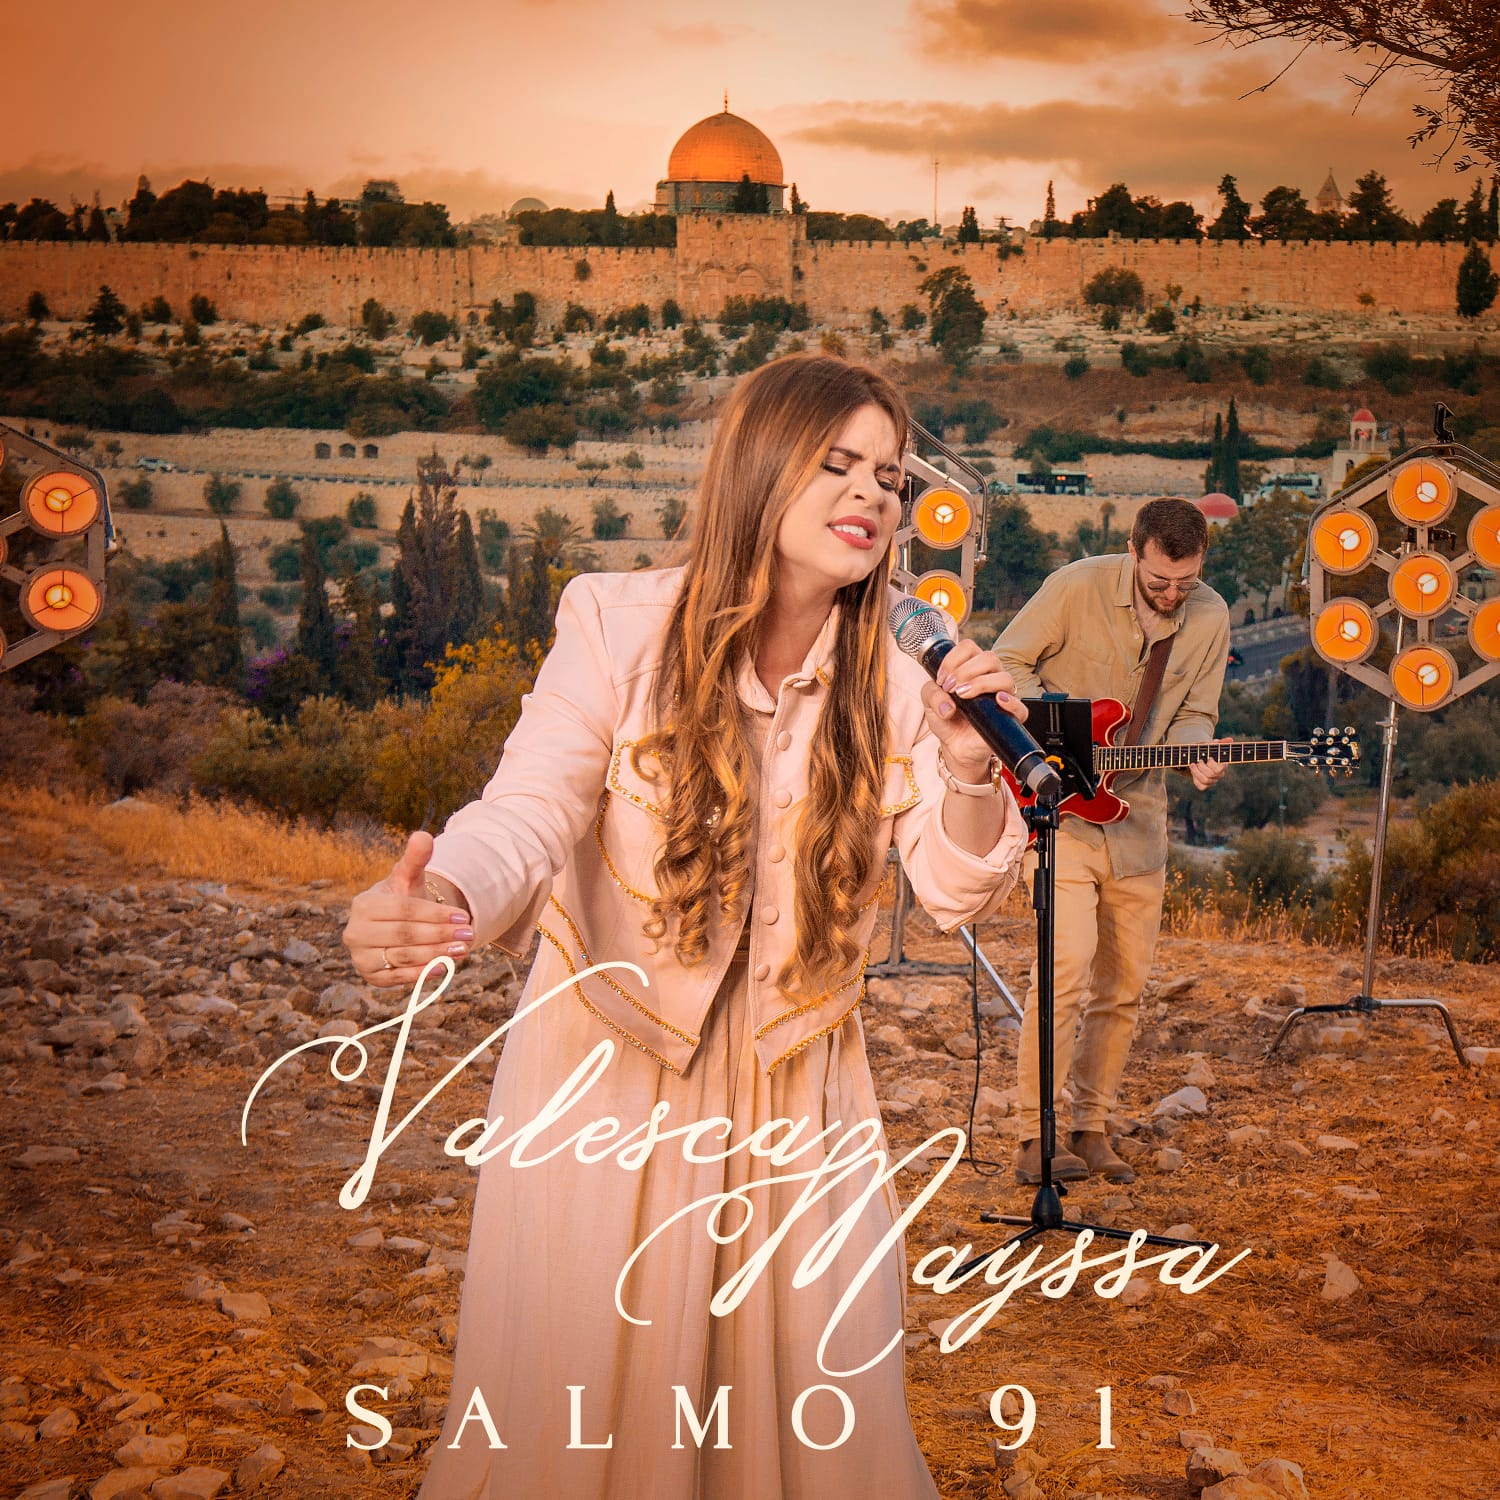 Valesca Mayssa interpreta a canção “Salmo 91” em projeto “Todah 10 Anos em Israel”